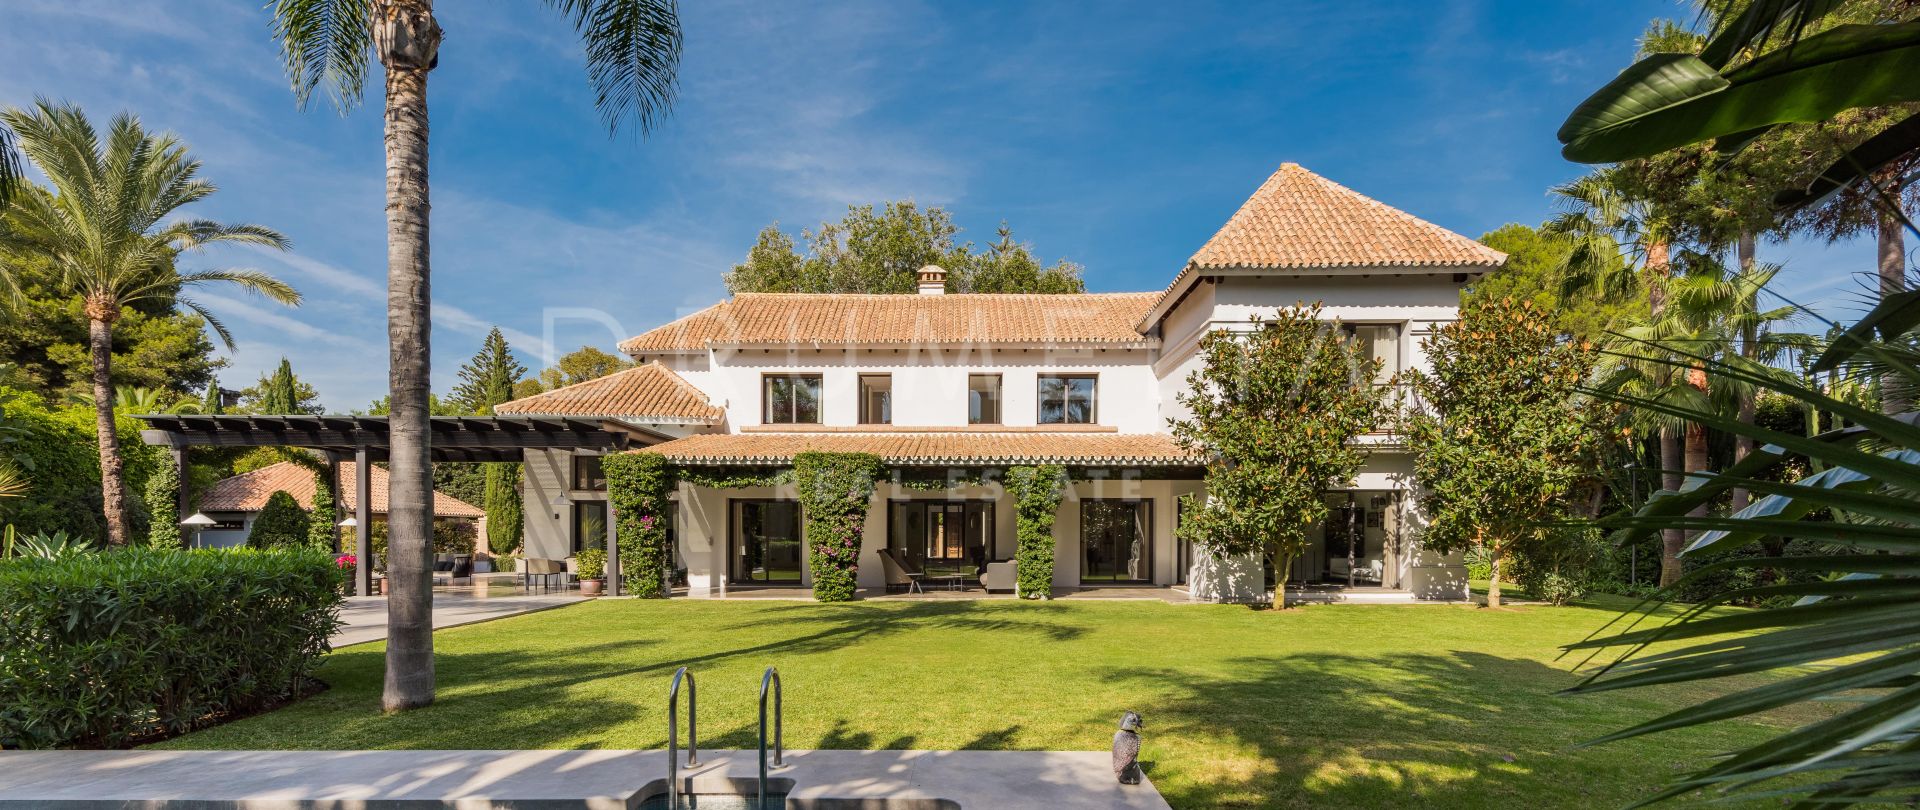 Villa for salg i Las Mimosas, Marbella - Puerto Banus